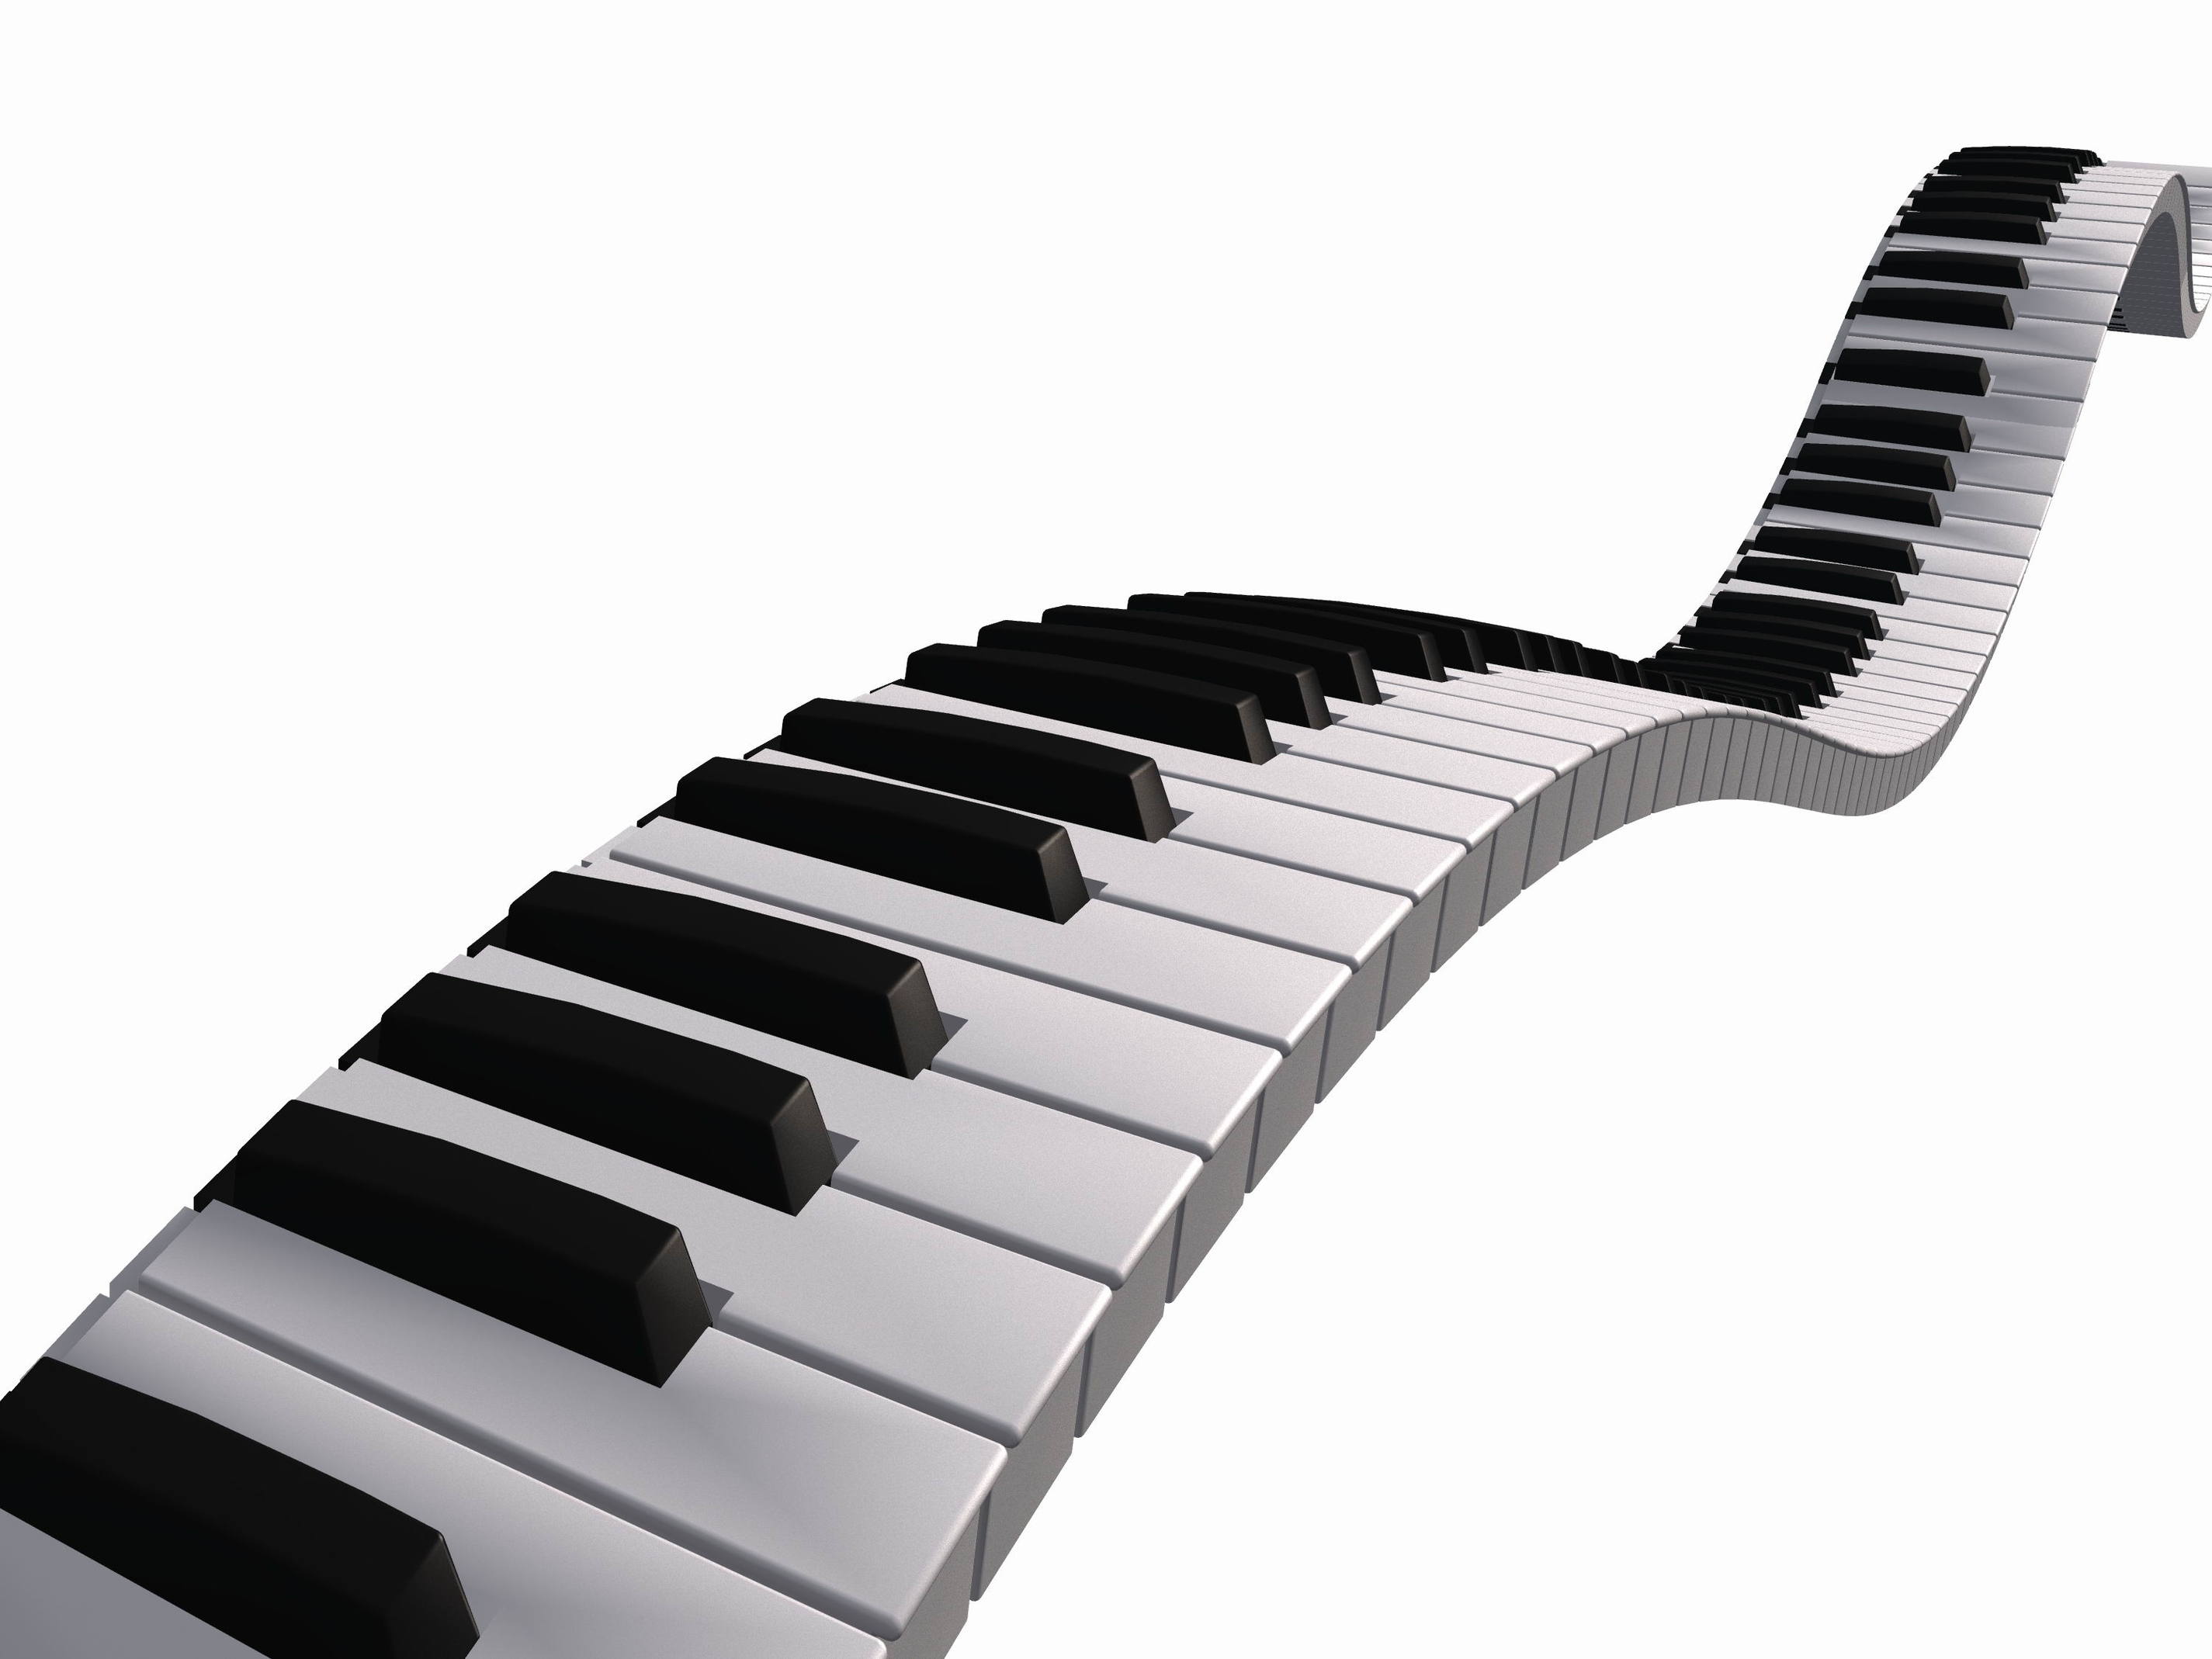 Wavy piano keyboard clipart -